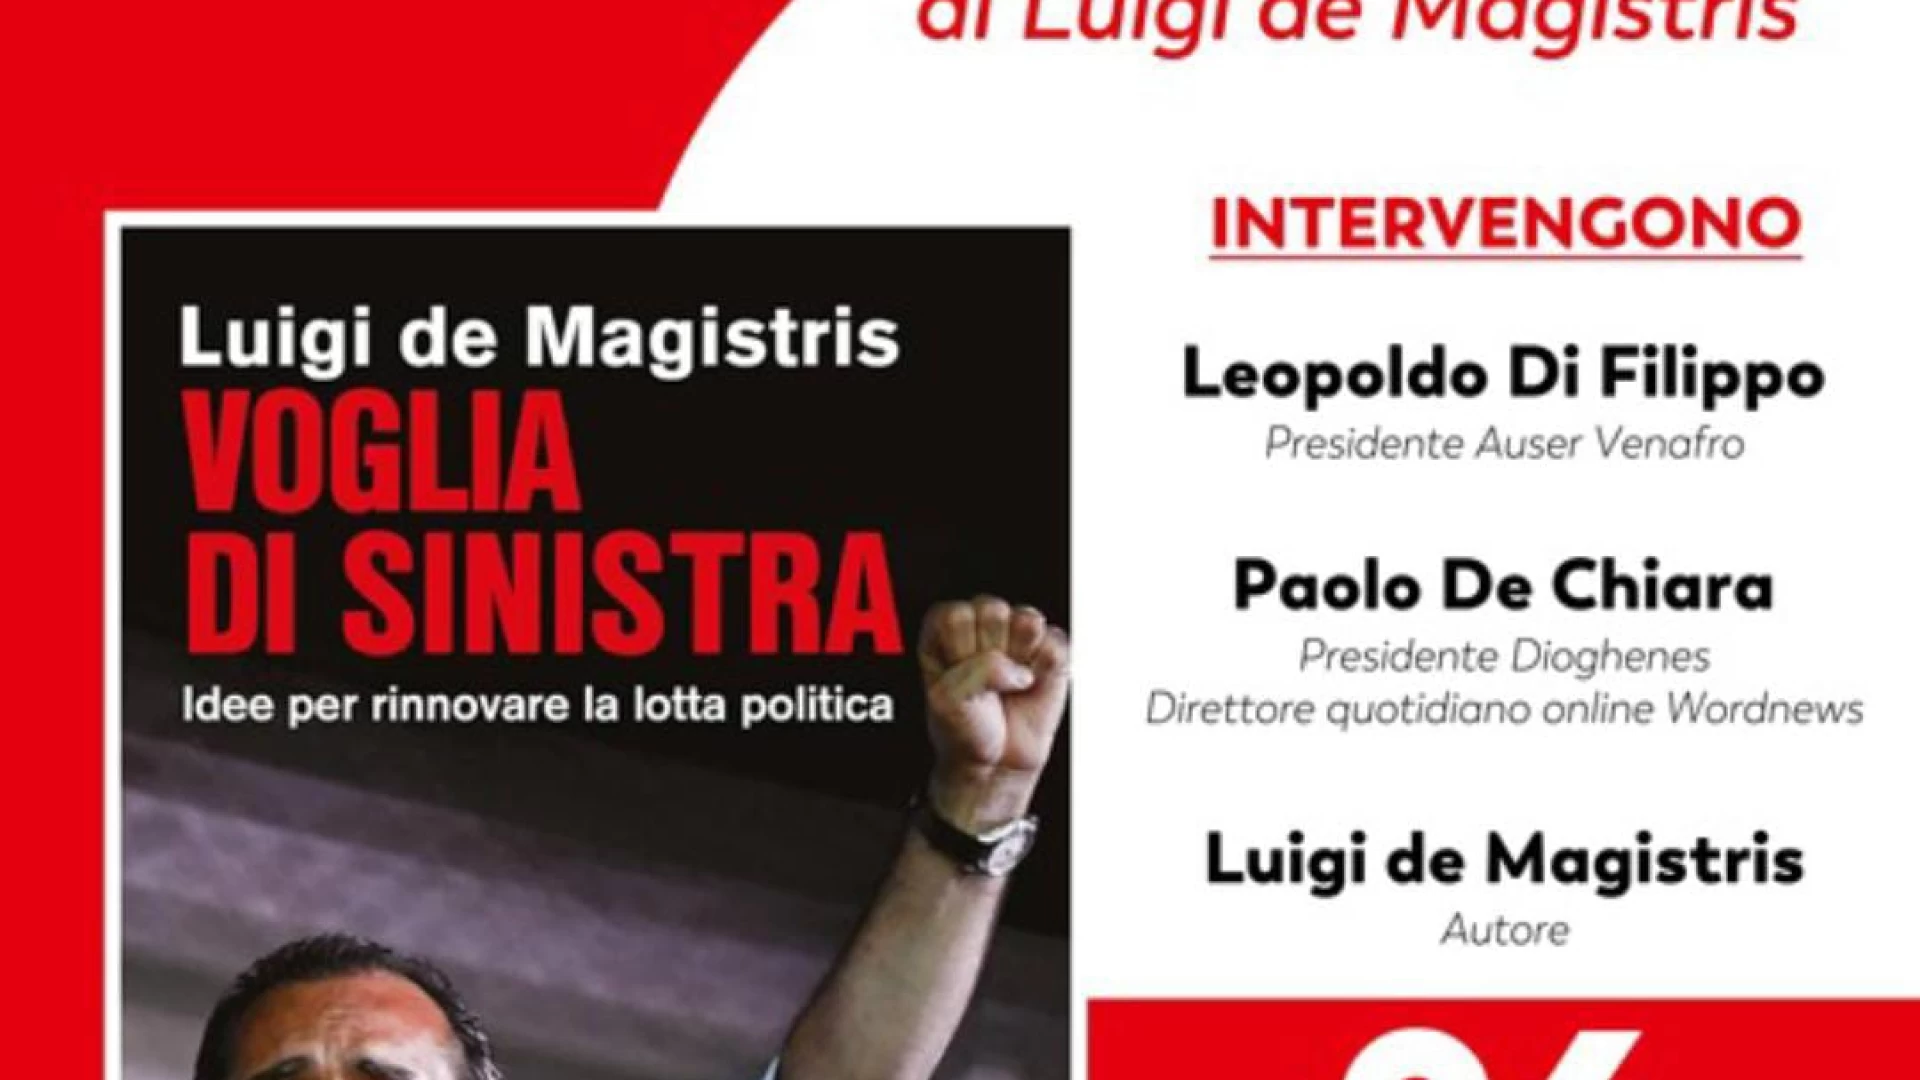 Venafro: mercoledì 26 giugno la presentazione del libro di Luigi De Magistris dal titolo “Voglia di sinistra”.